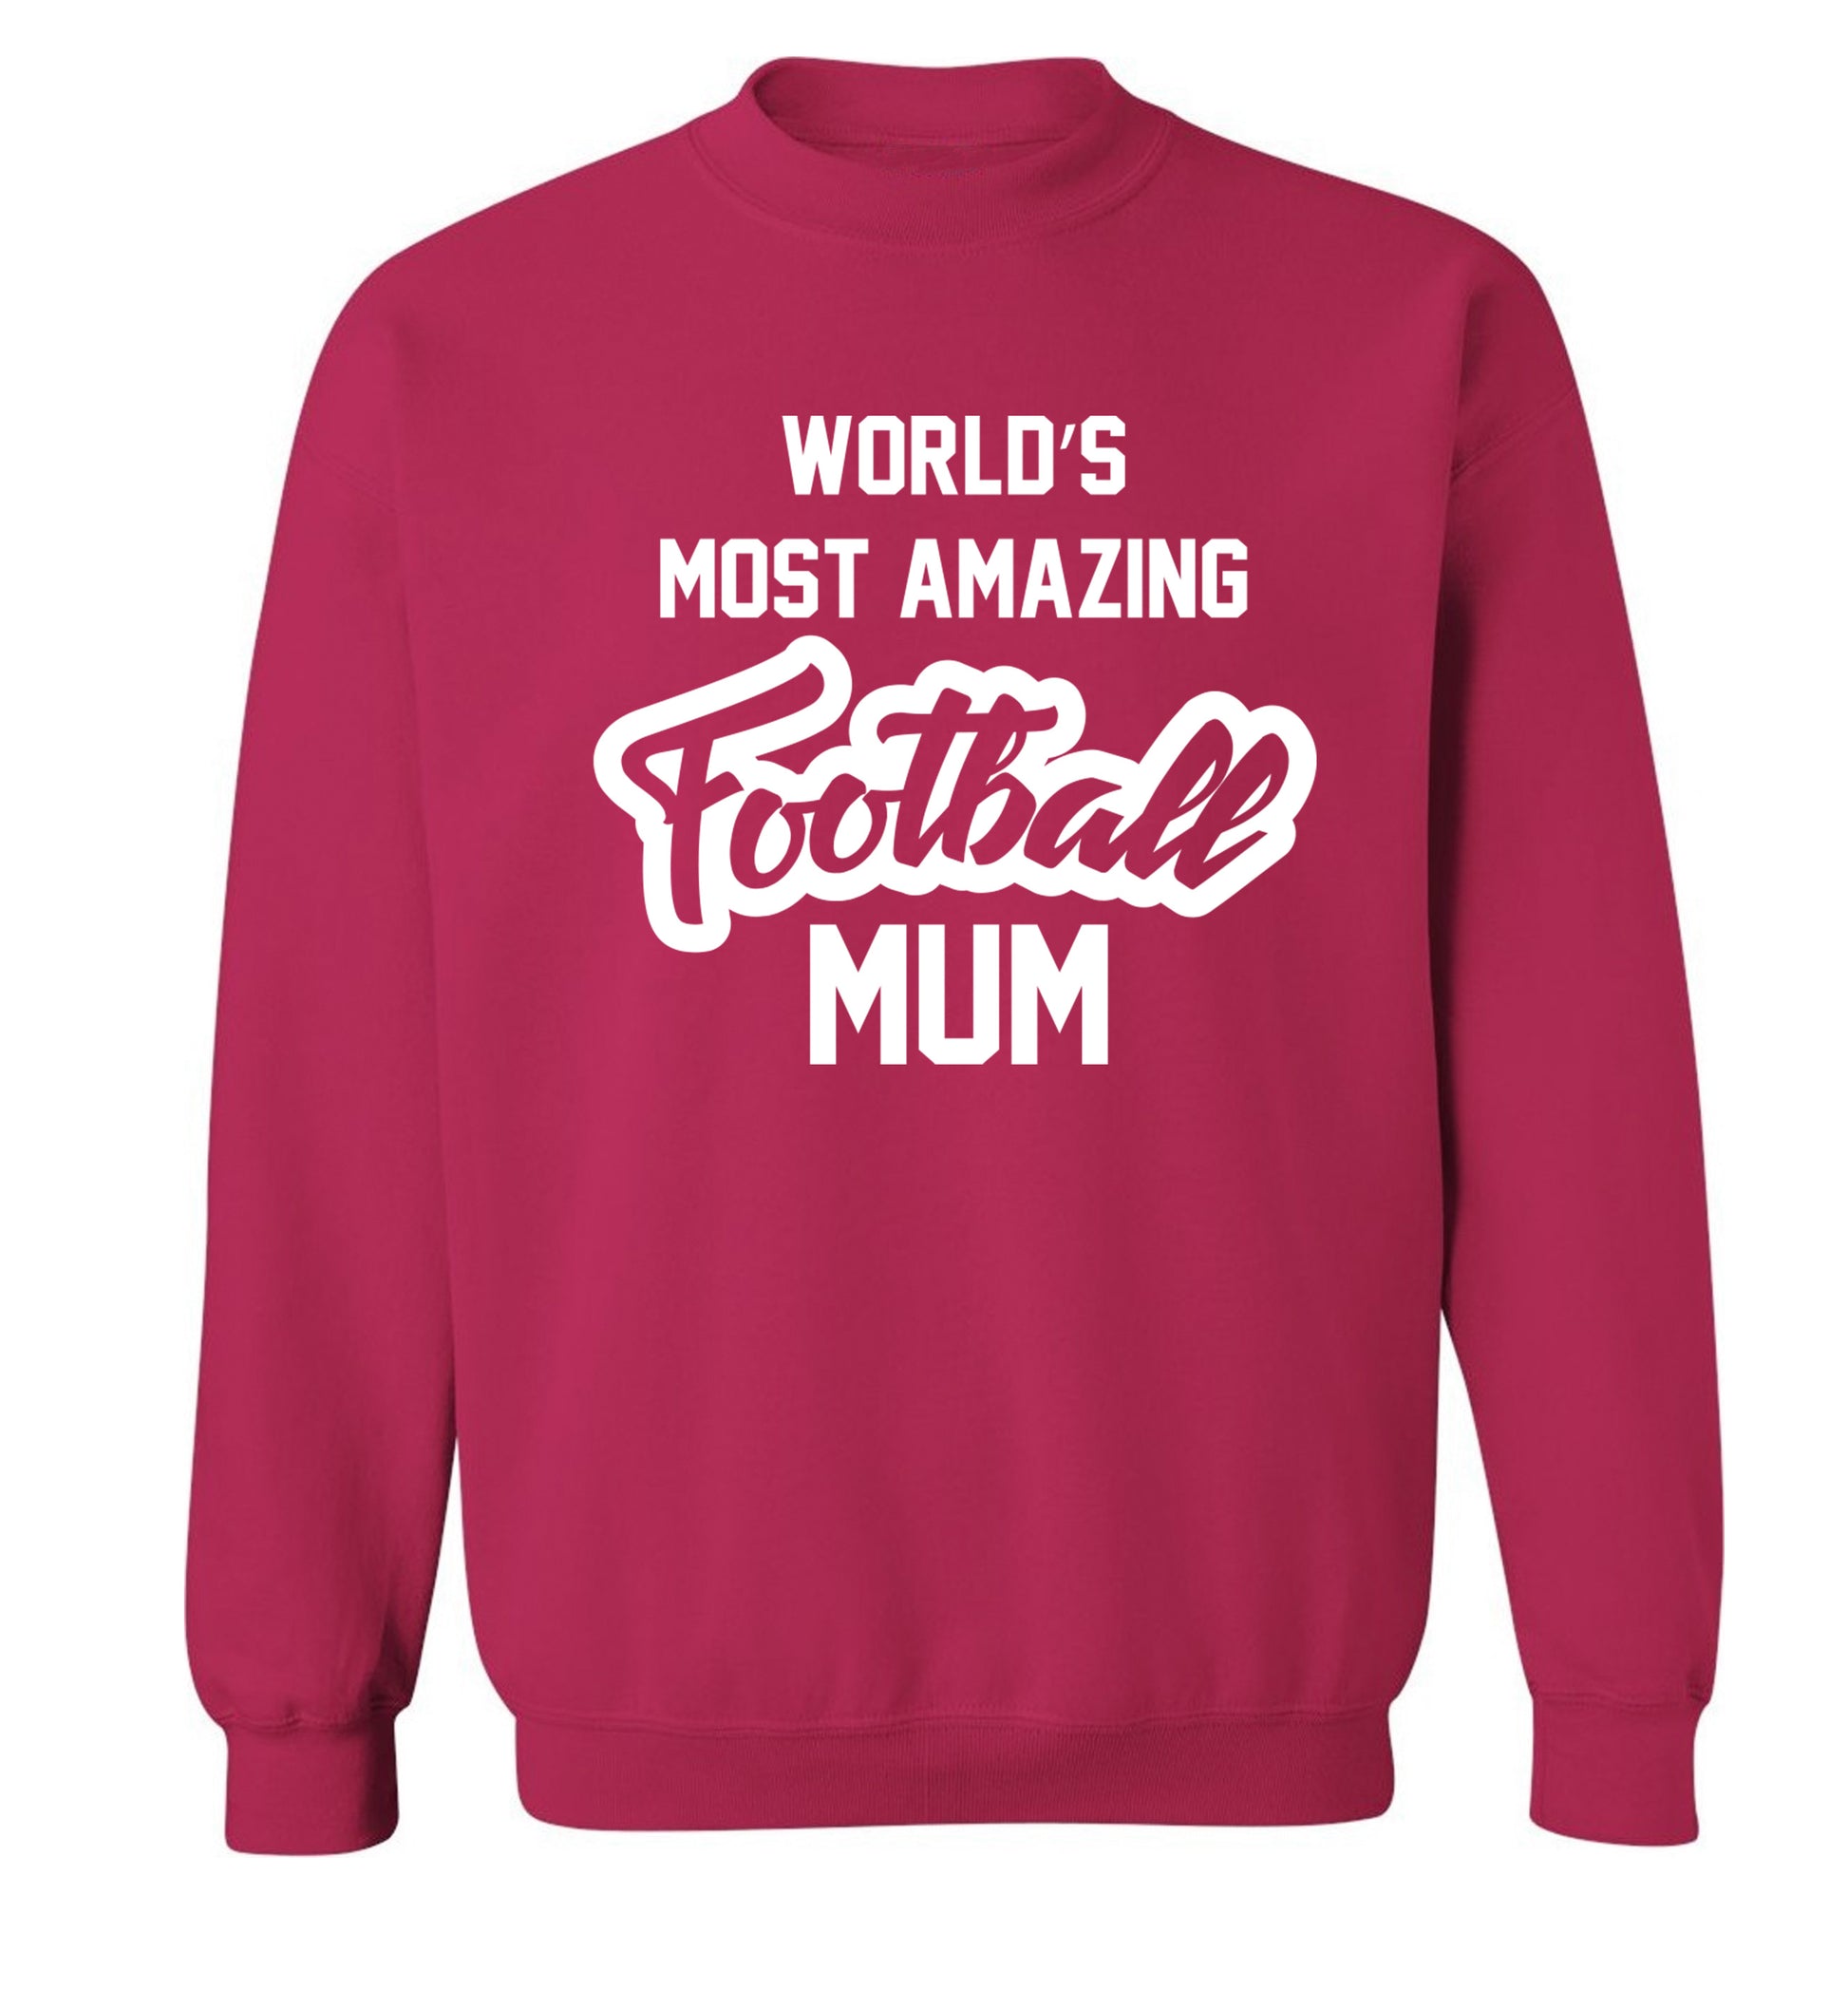 Worlds most amazing football mum Adult's unisexpink Sweater 2XL